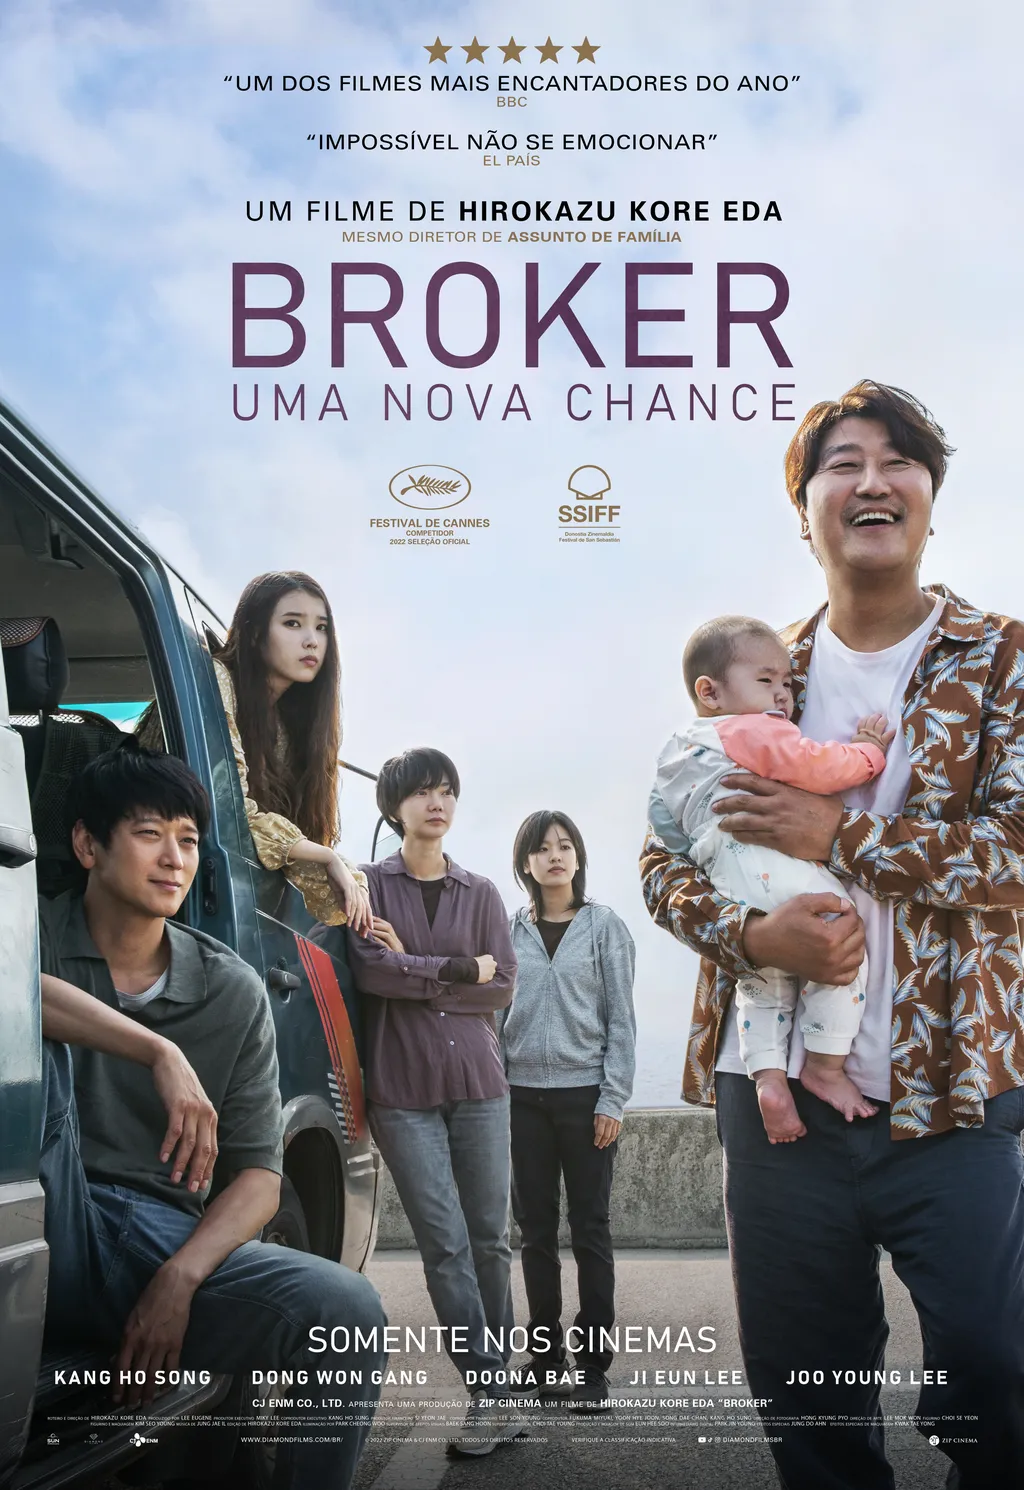 Netflix divulga trailer de sua nova série sul-coreana que promete causar  polêmica - CinePOP